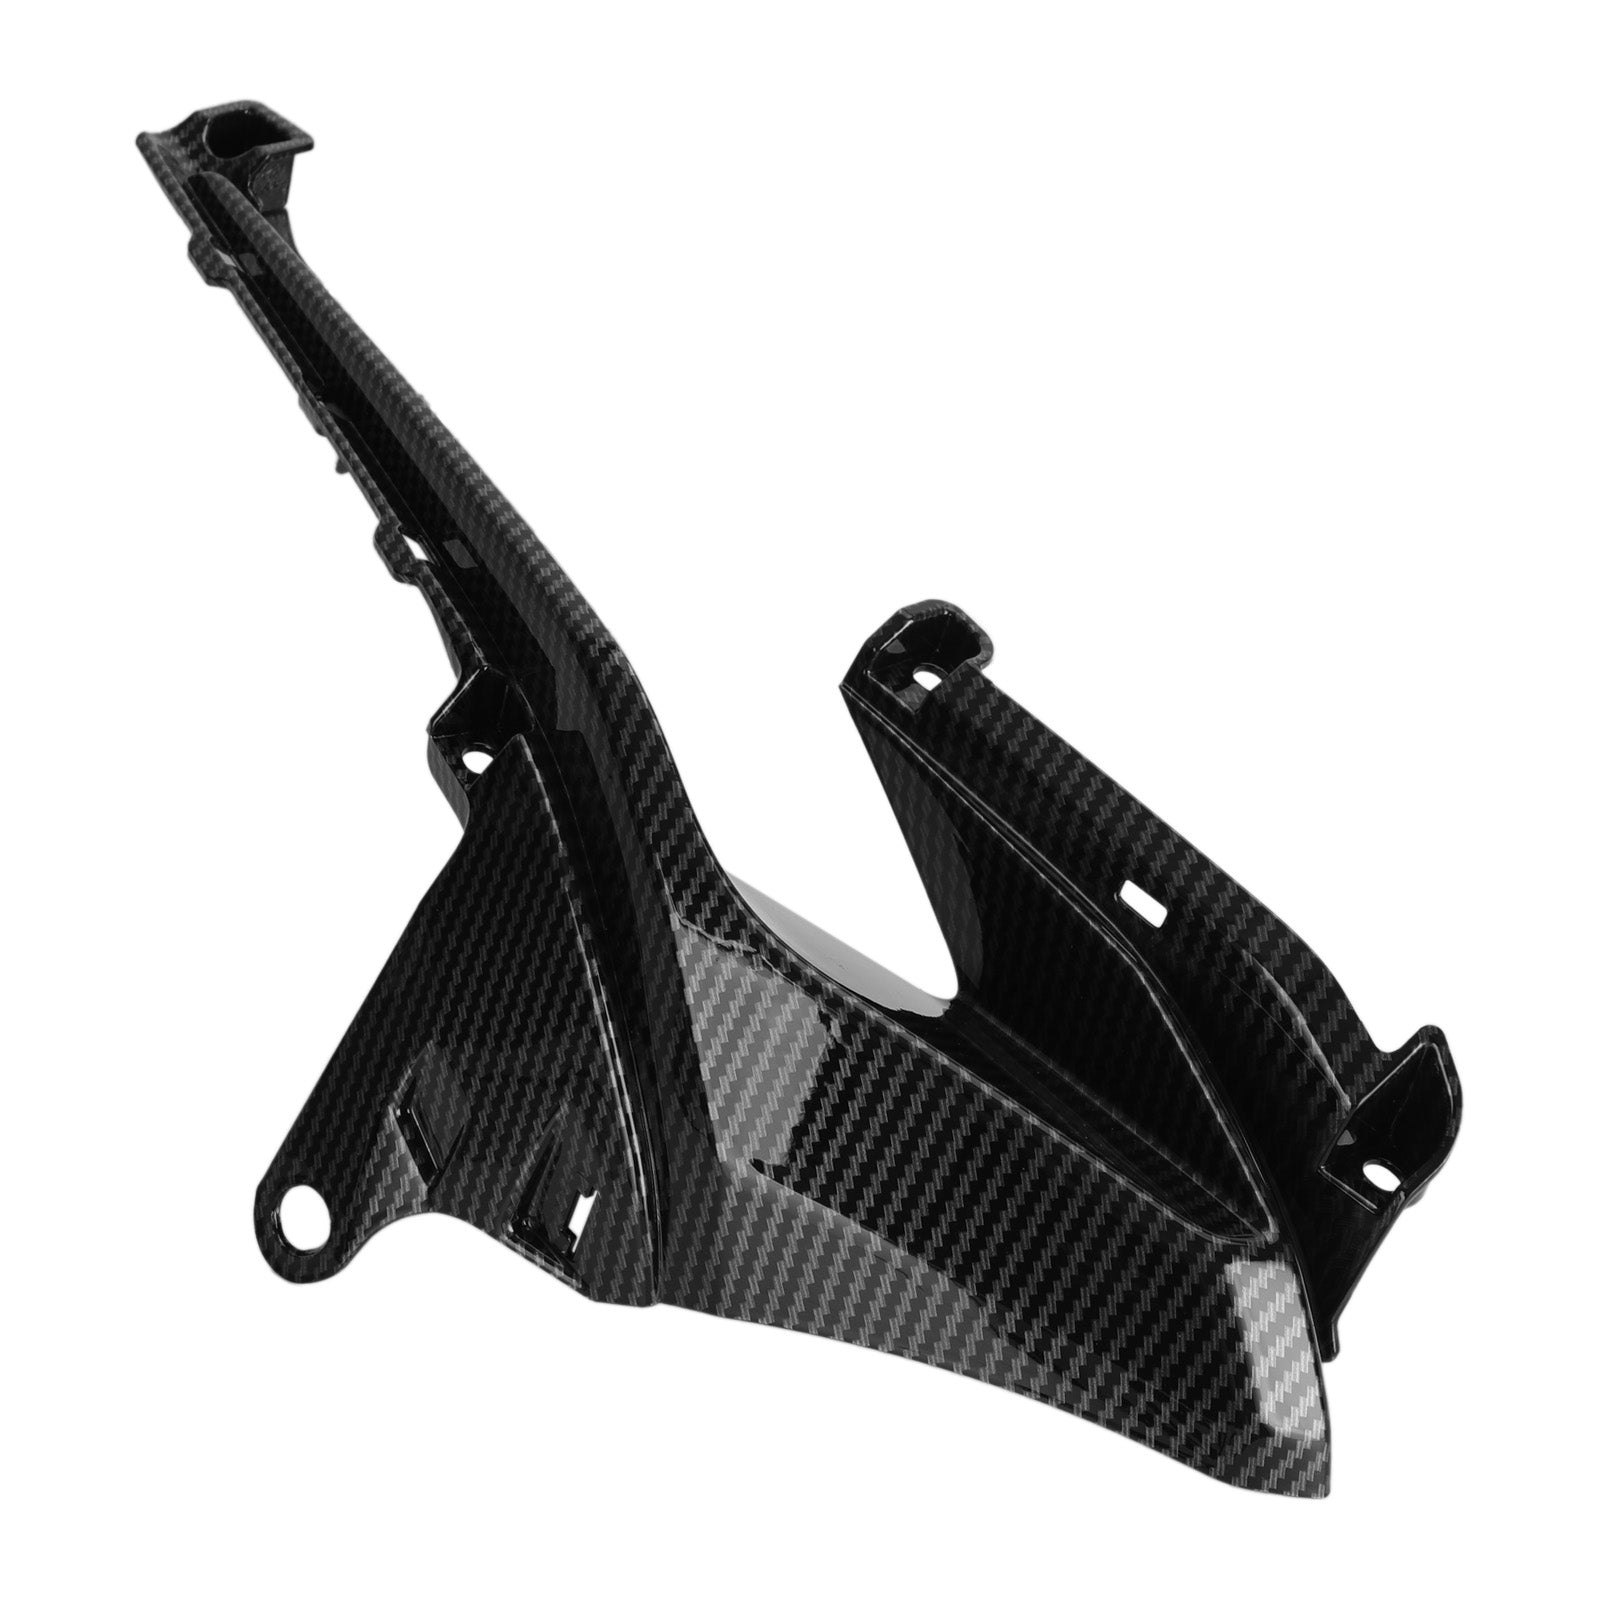 Pannelli laterali della copertura della presa d'aria adatti per Honda CBR500R 2019-2021 Carbonio